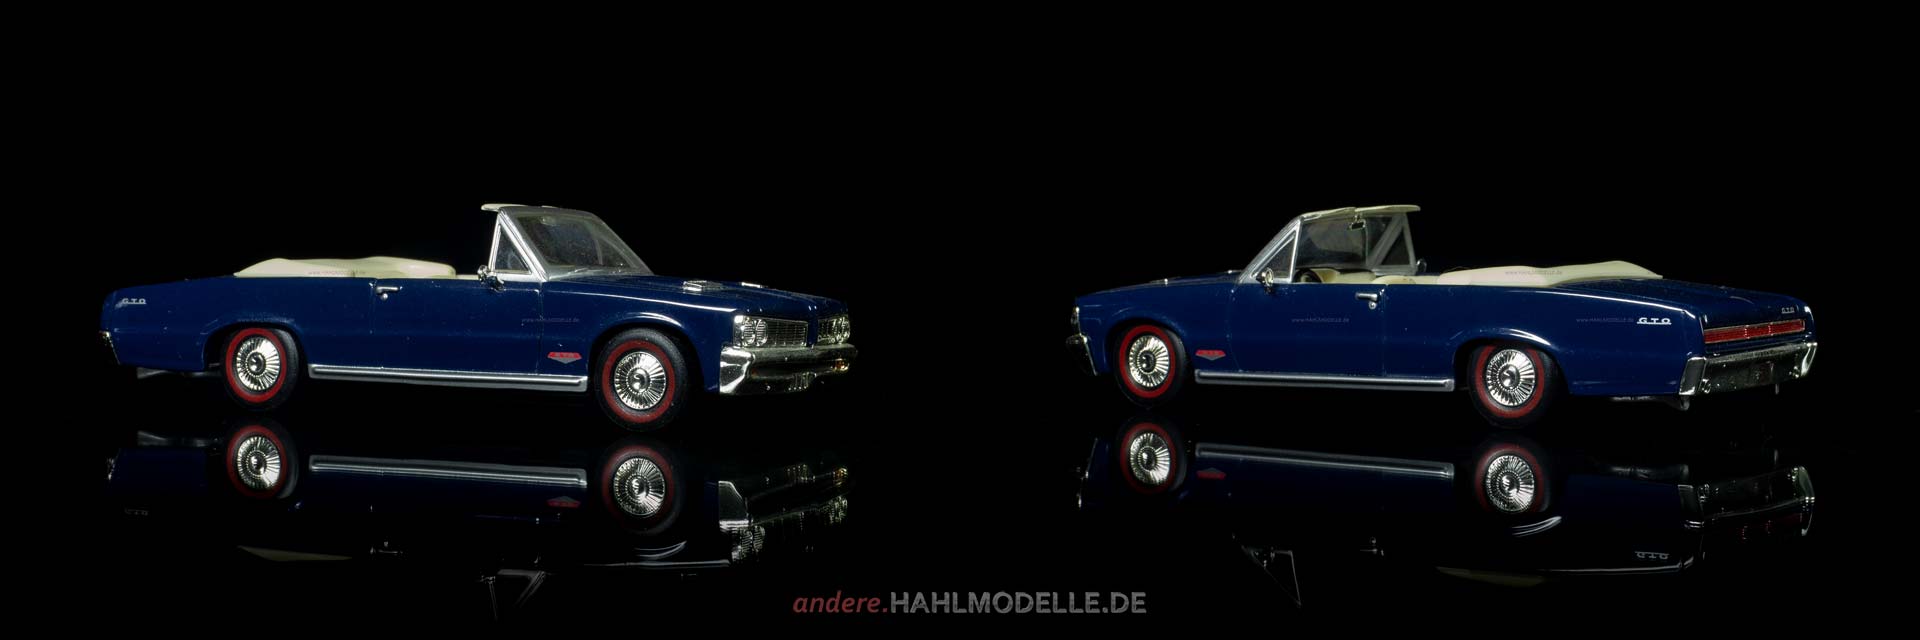 Pontiac GTO | Cabriolet | Ixo (Del Prado Car Collection) | 1:43 | www.andere.hahlmodelle.de